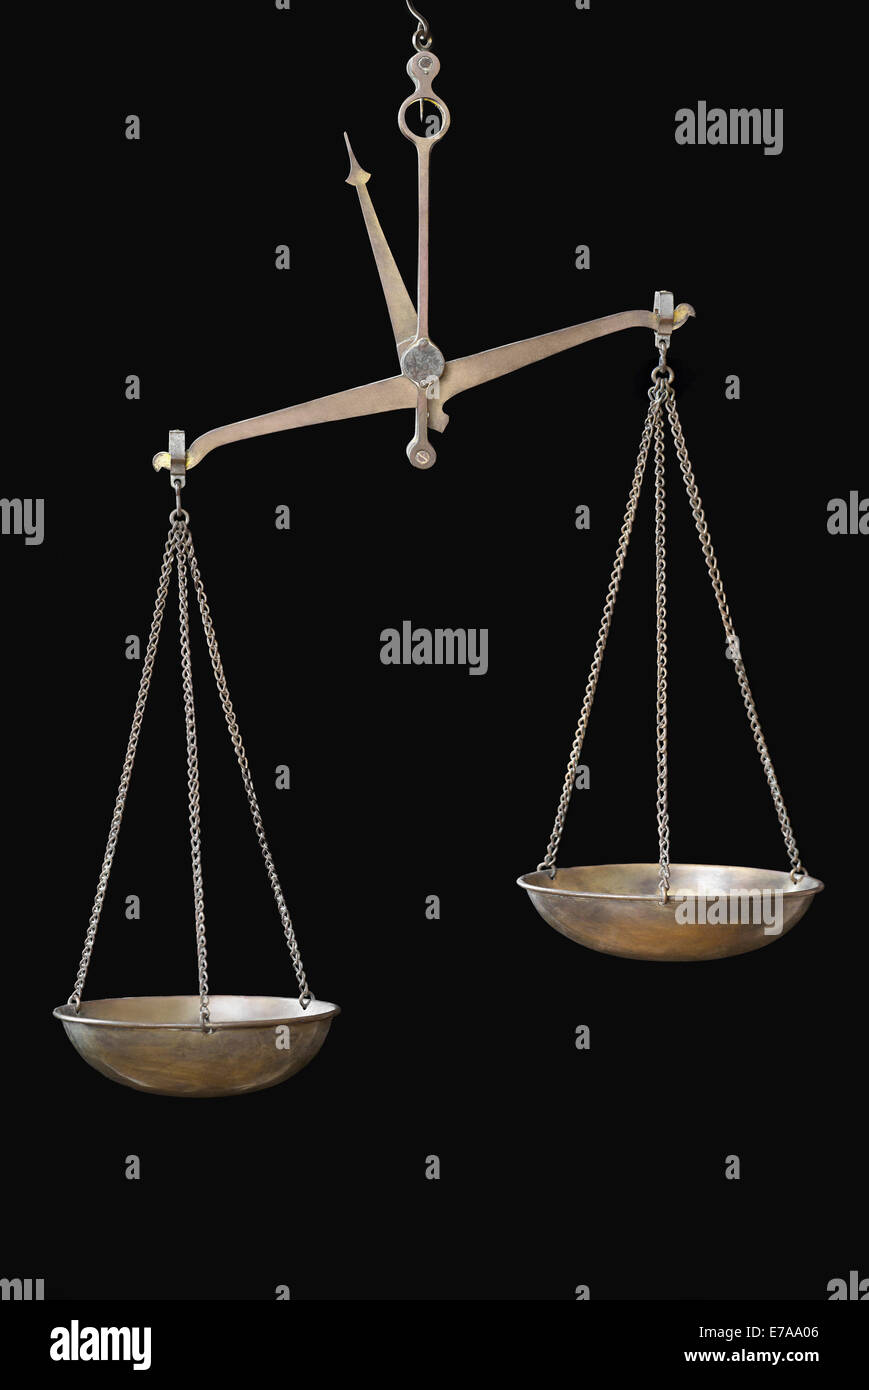 Equal arm balance immagini e fotografie stock ad alta risoluzione - Alamy